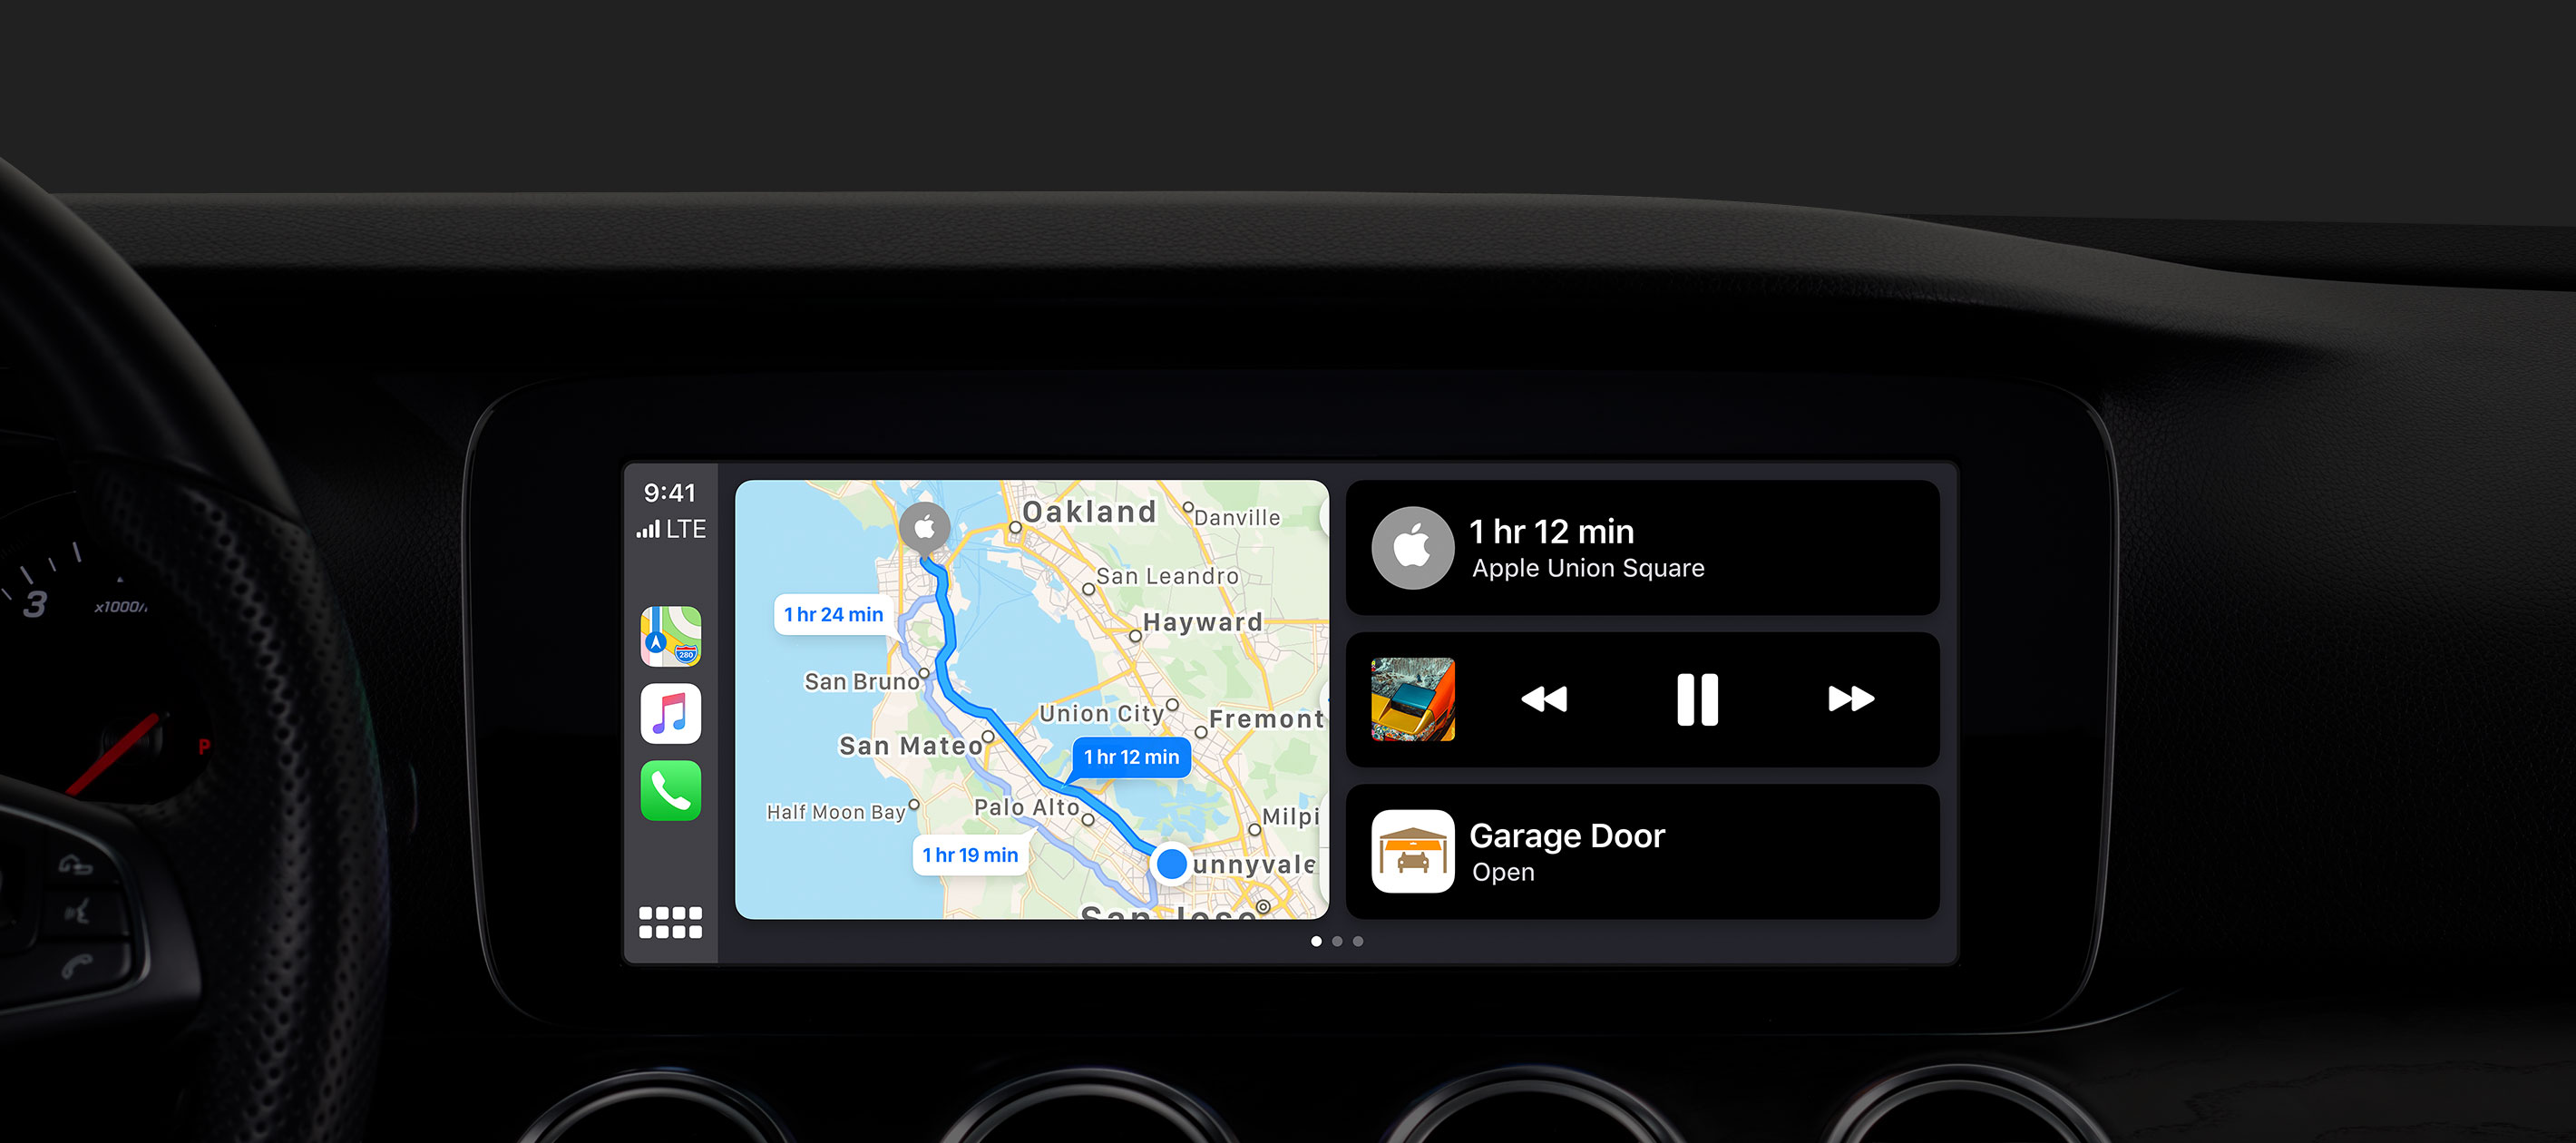 Uus CarPlay iOS 13-s